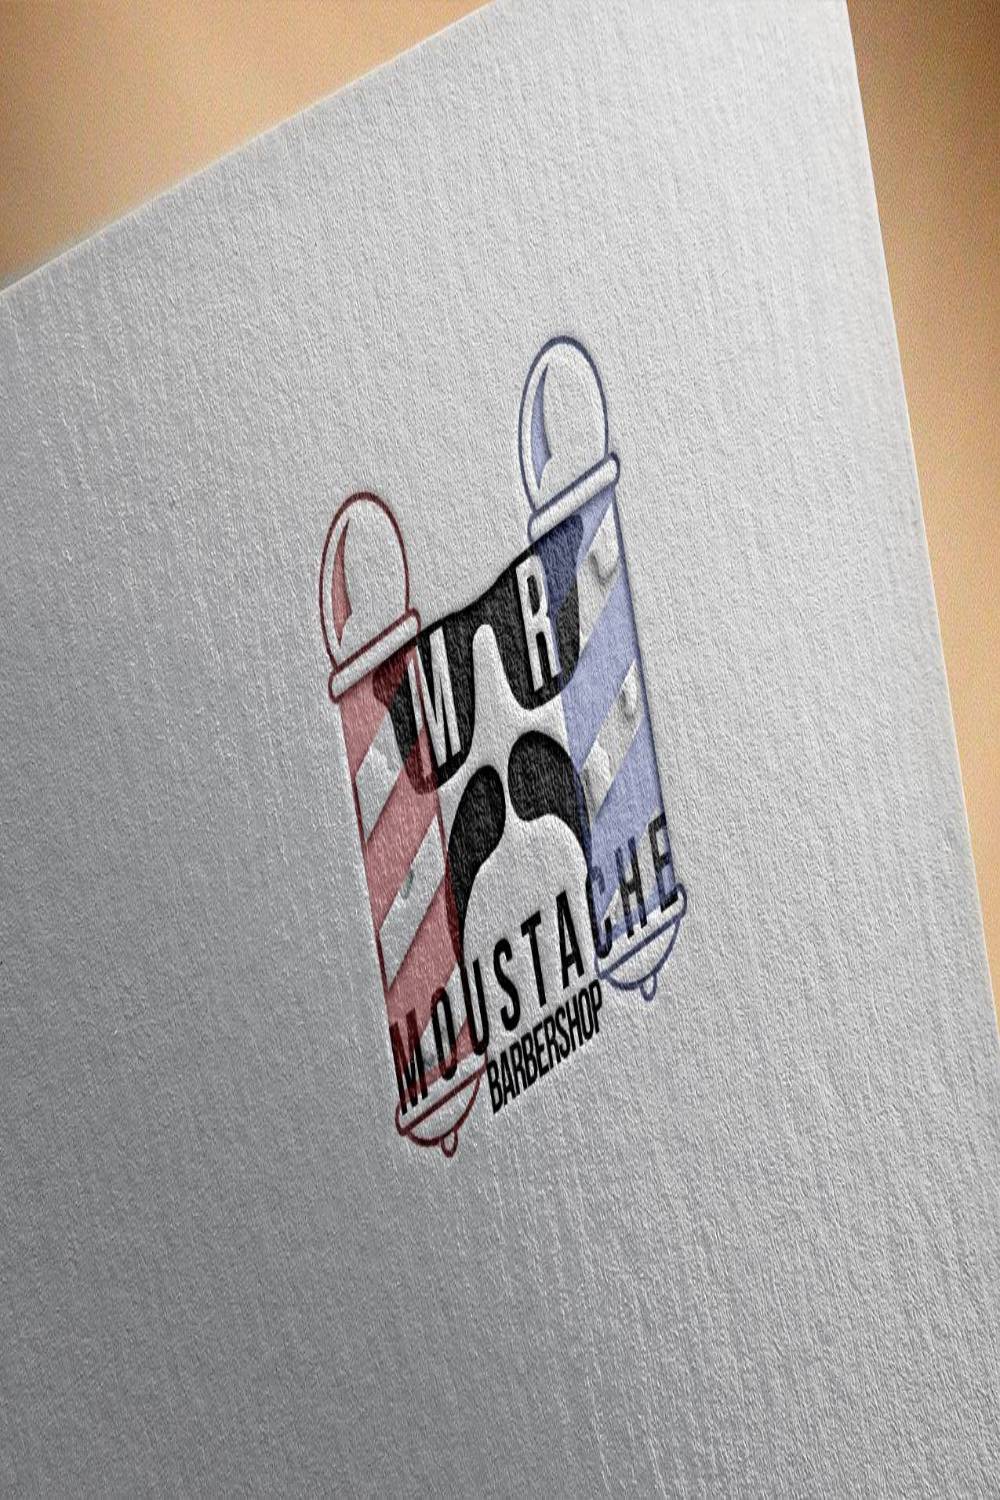 Mr Moustache Barbershop Logo Design pinterest image.